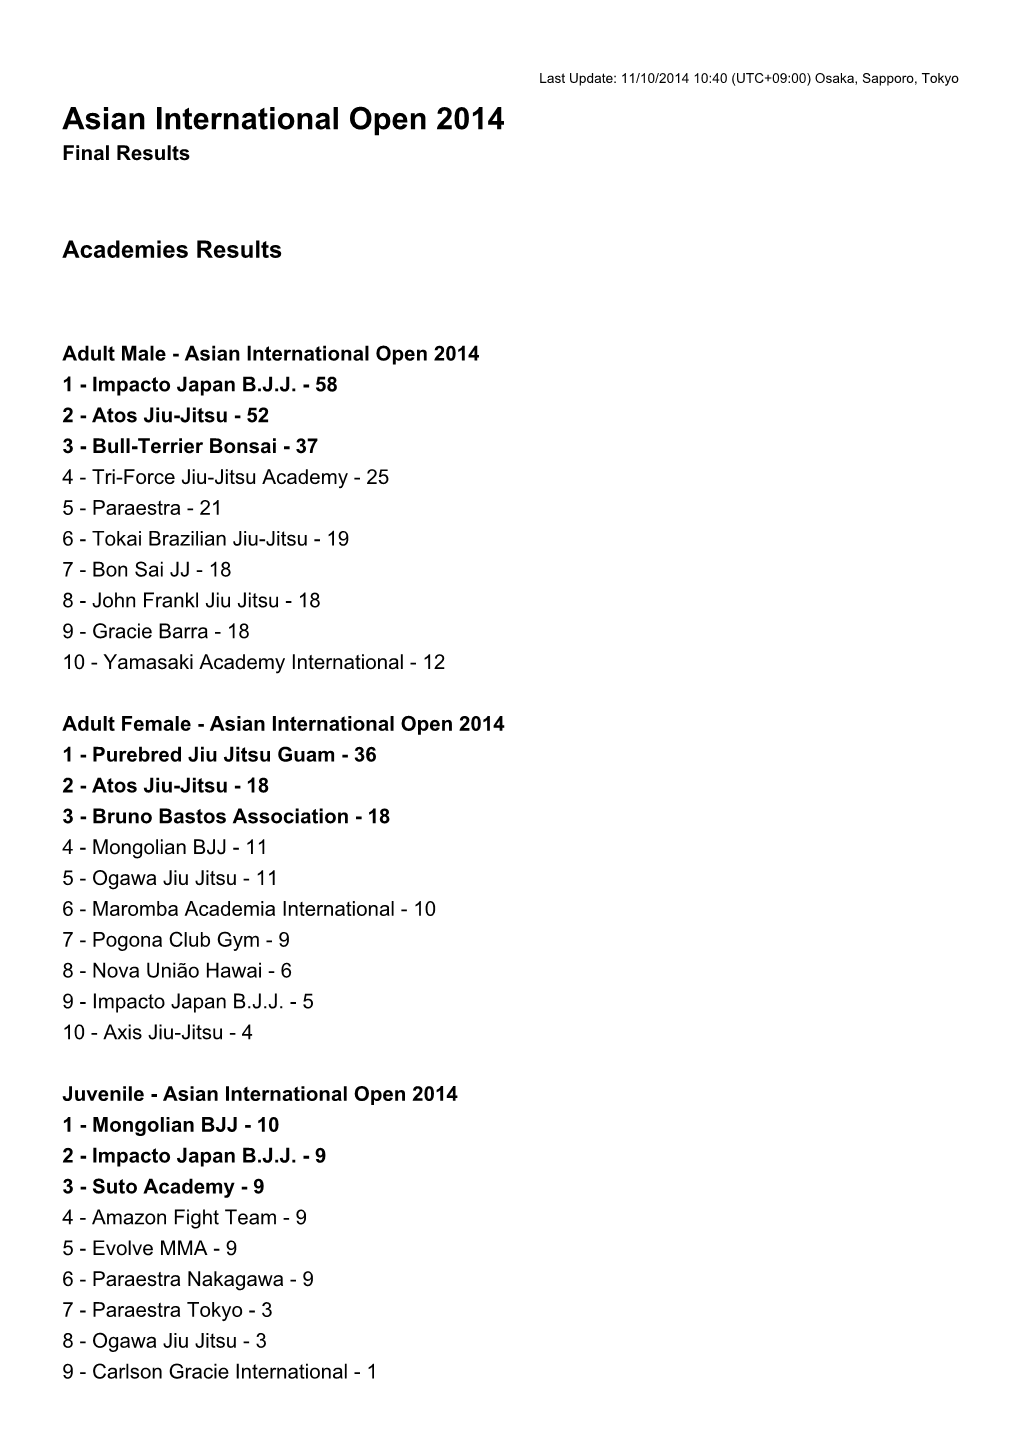 Asian International Open 2014 Final Results